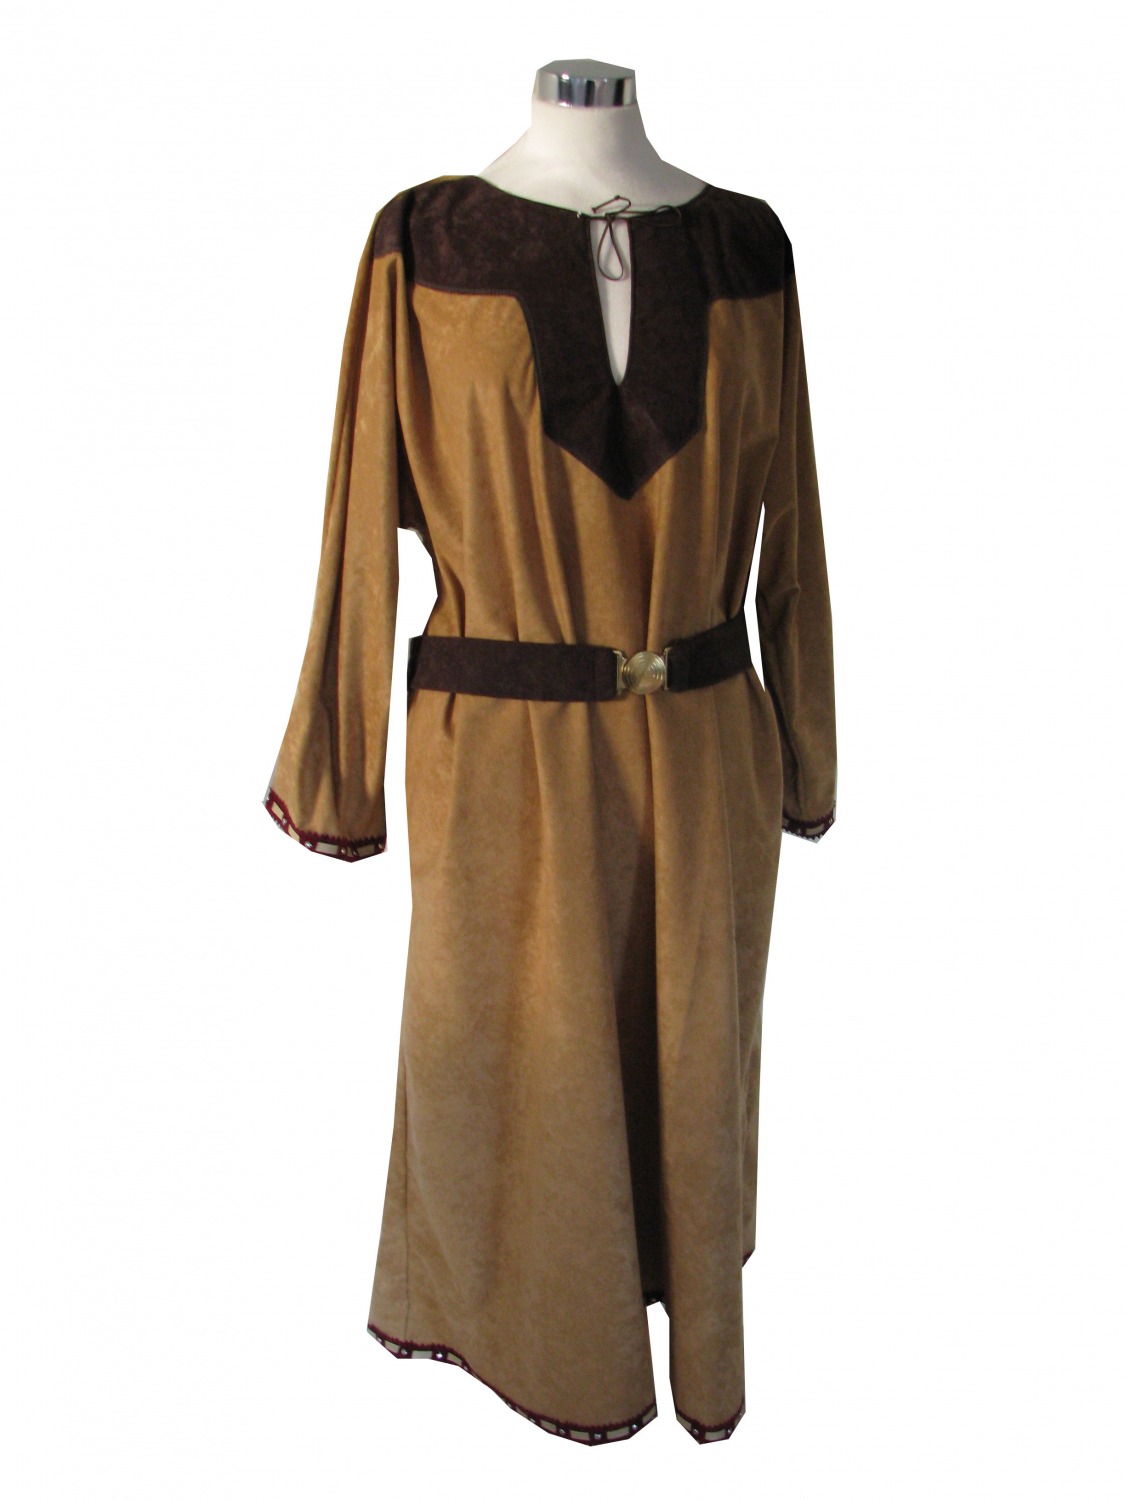 Ladies Saxon Viking Fancy Dress Costume Image